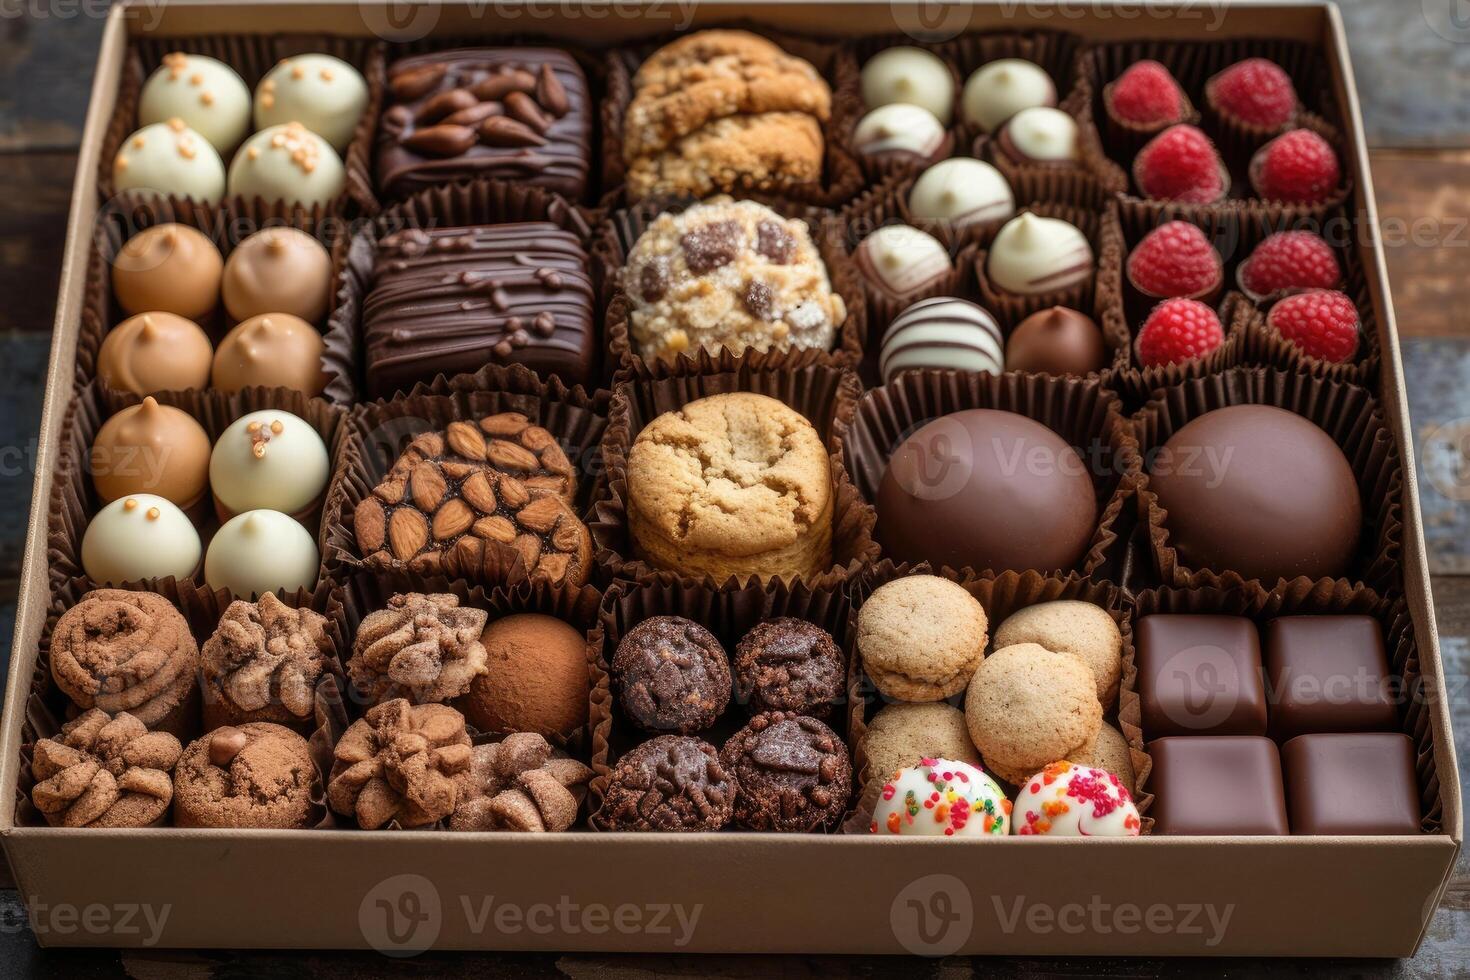 ai gerado uma ampla presente caixa preenchidas com uma variedade do chocolates e biscoitos profissional publicidade Comida fotografia foto